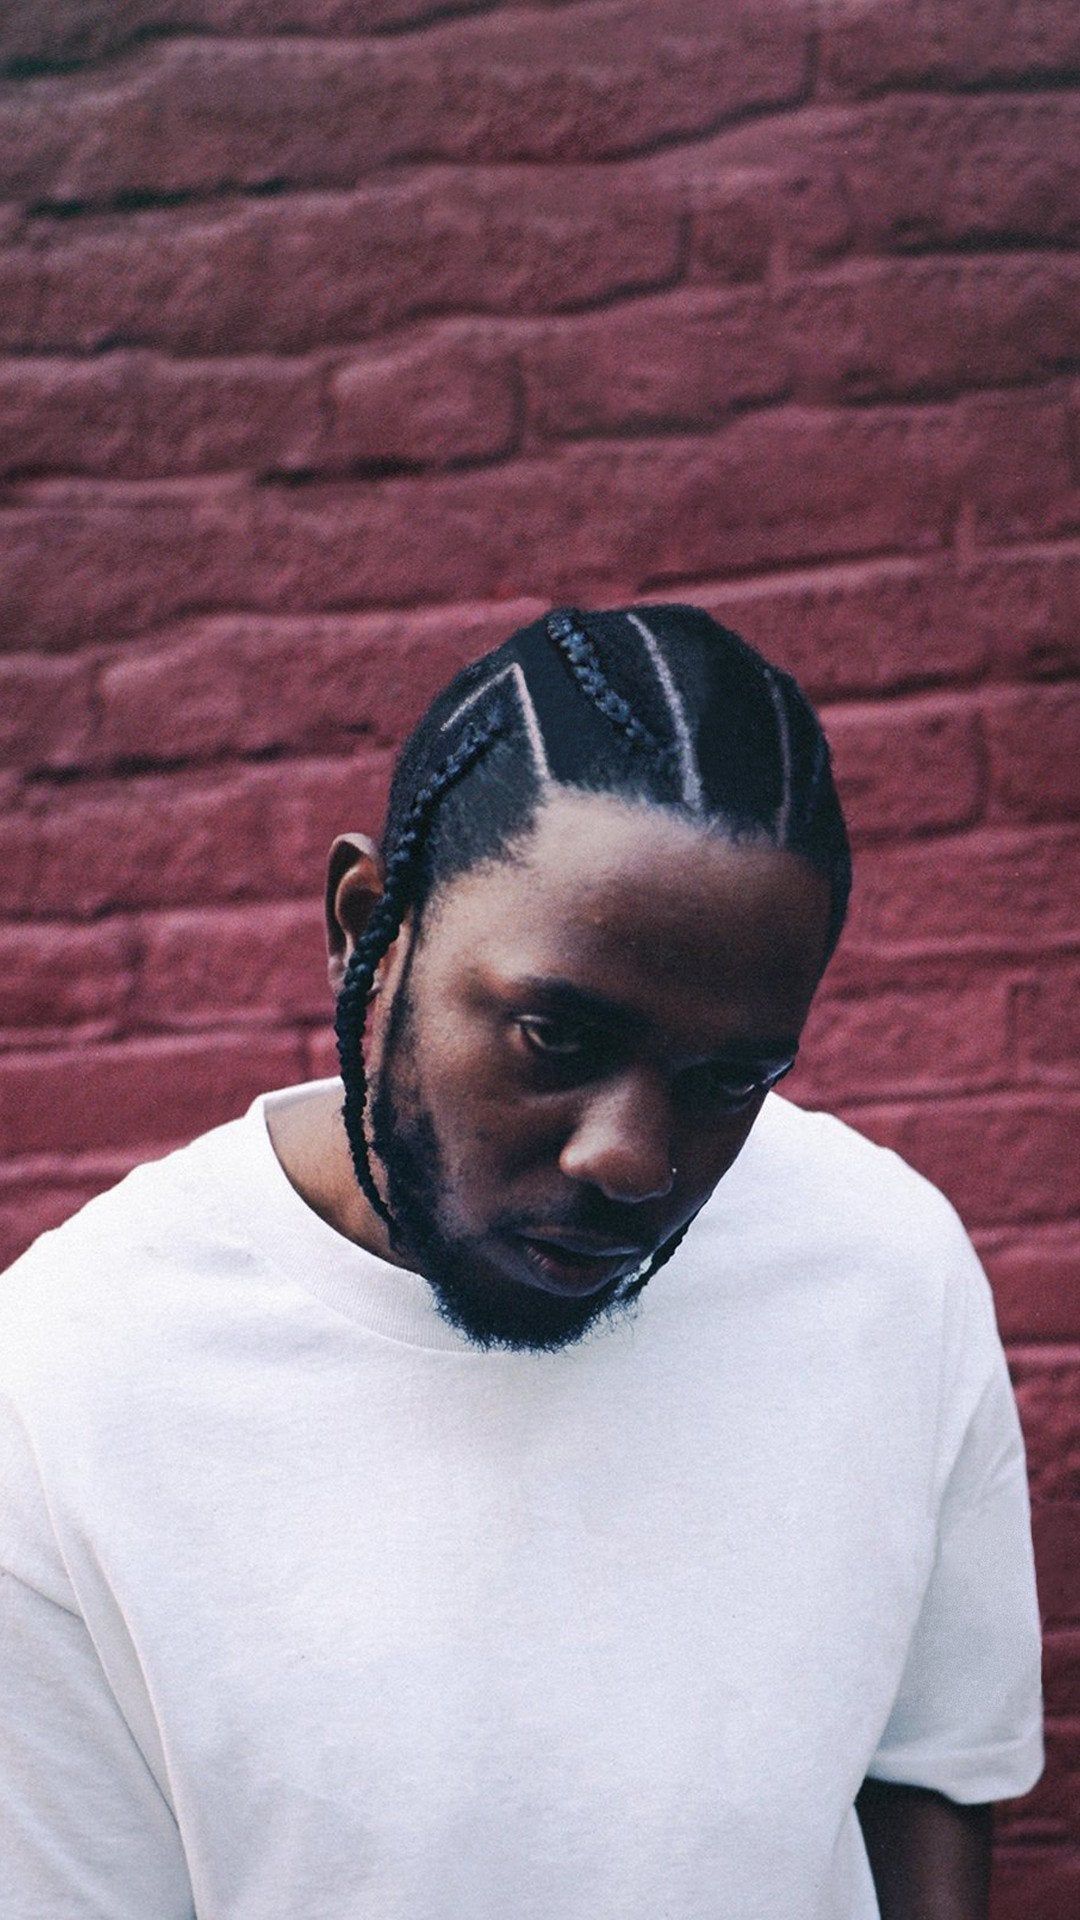 Kendrick Lamar Wallpaper Kendrick Lamar Background Download